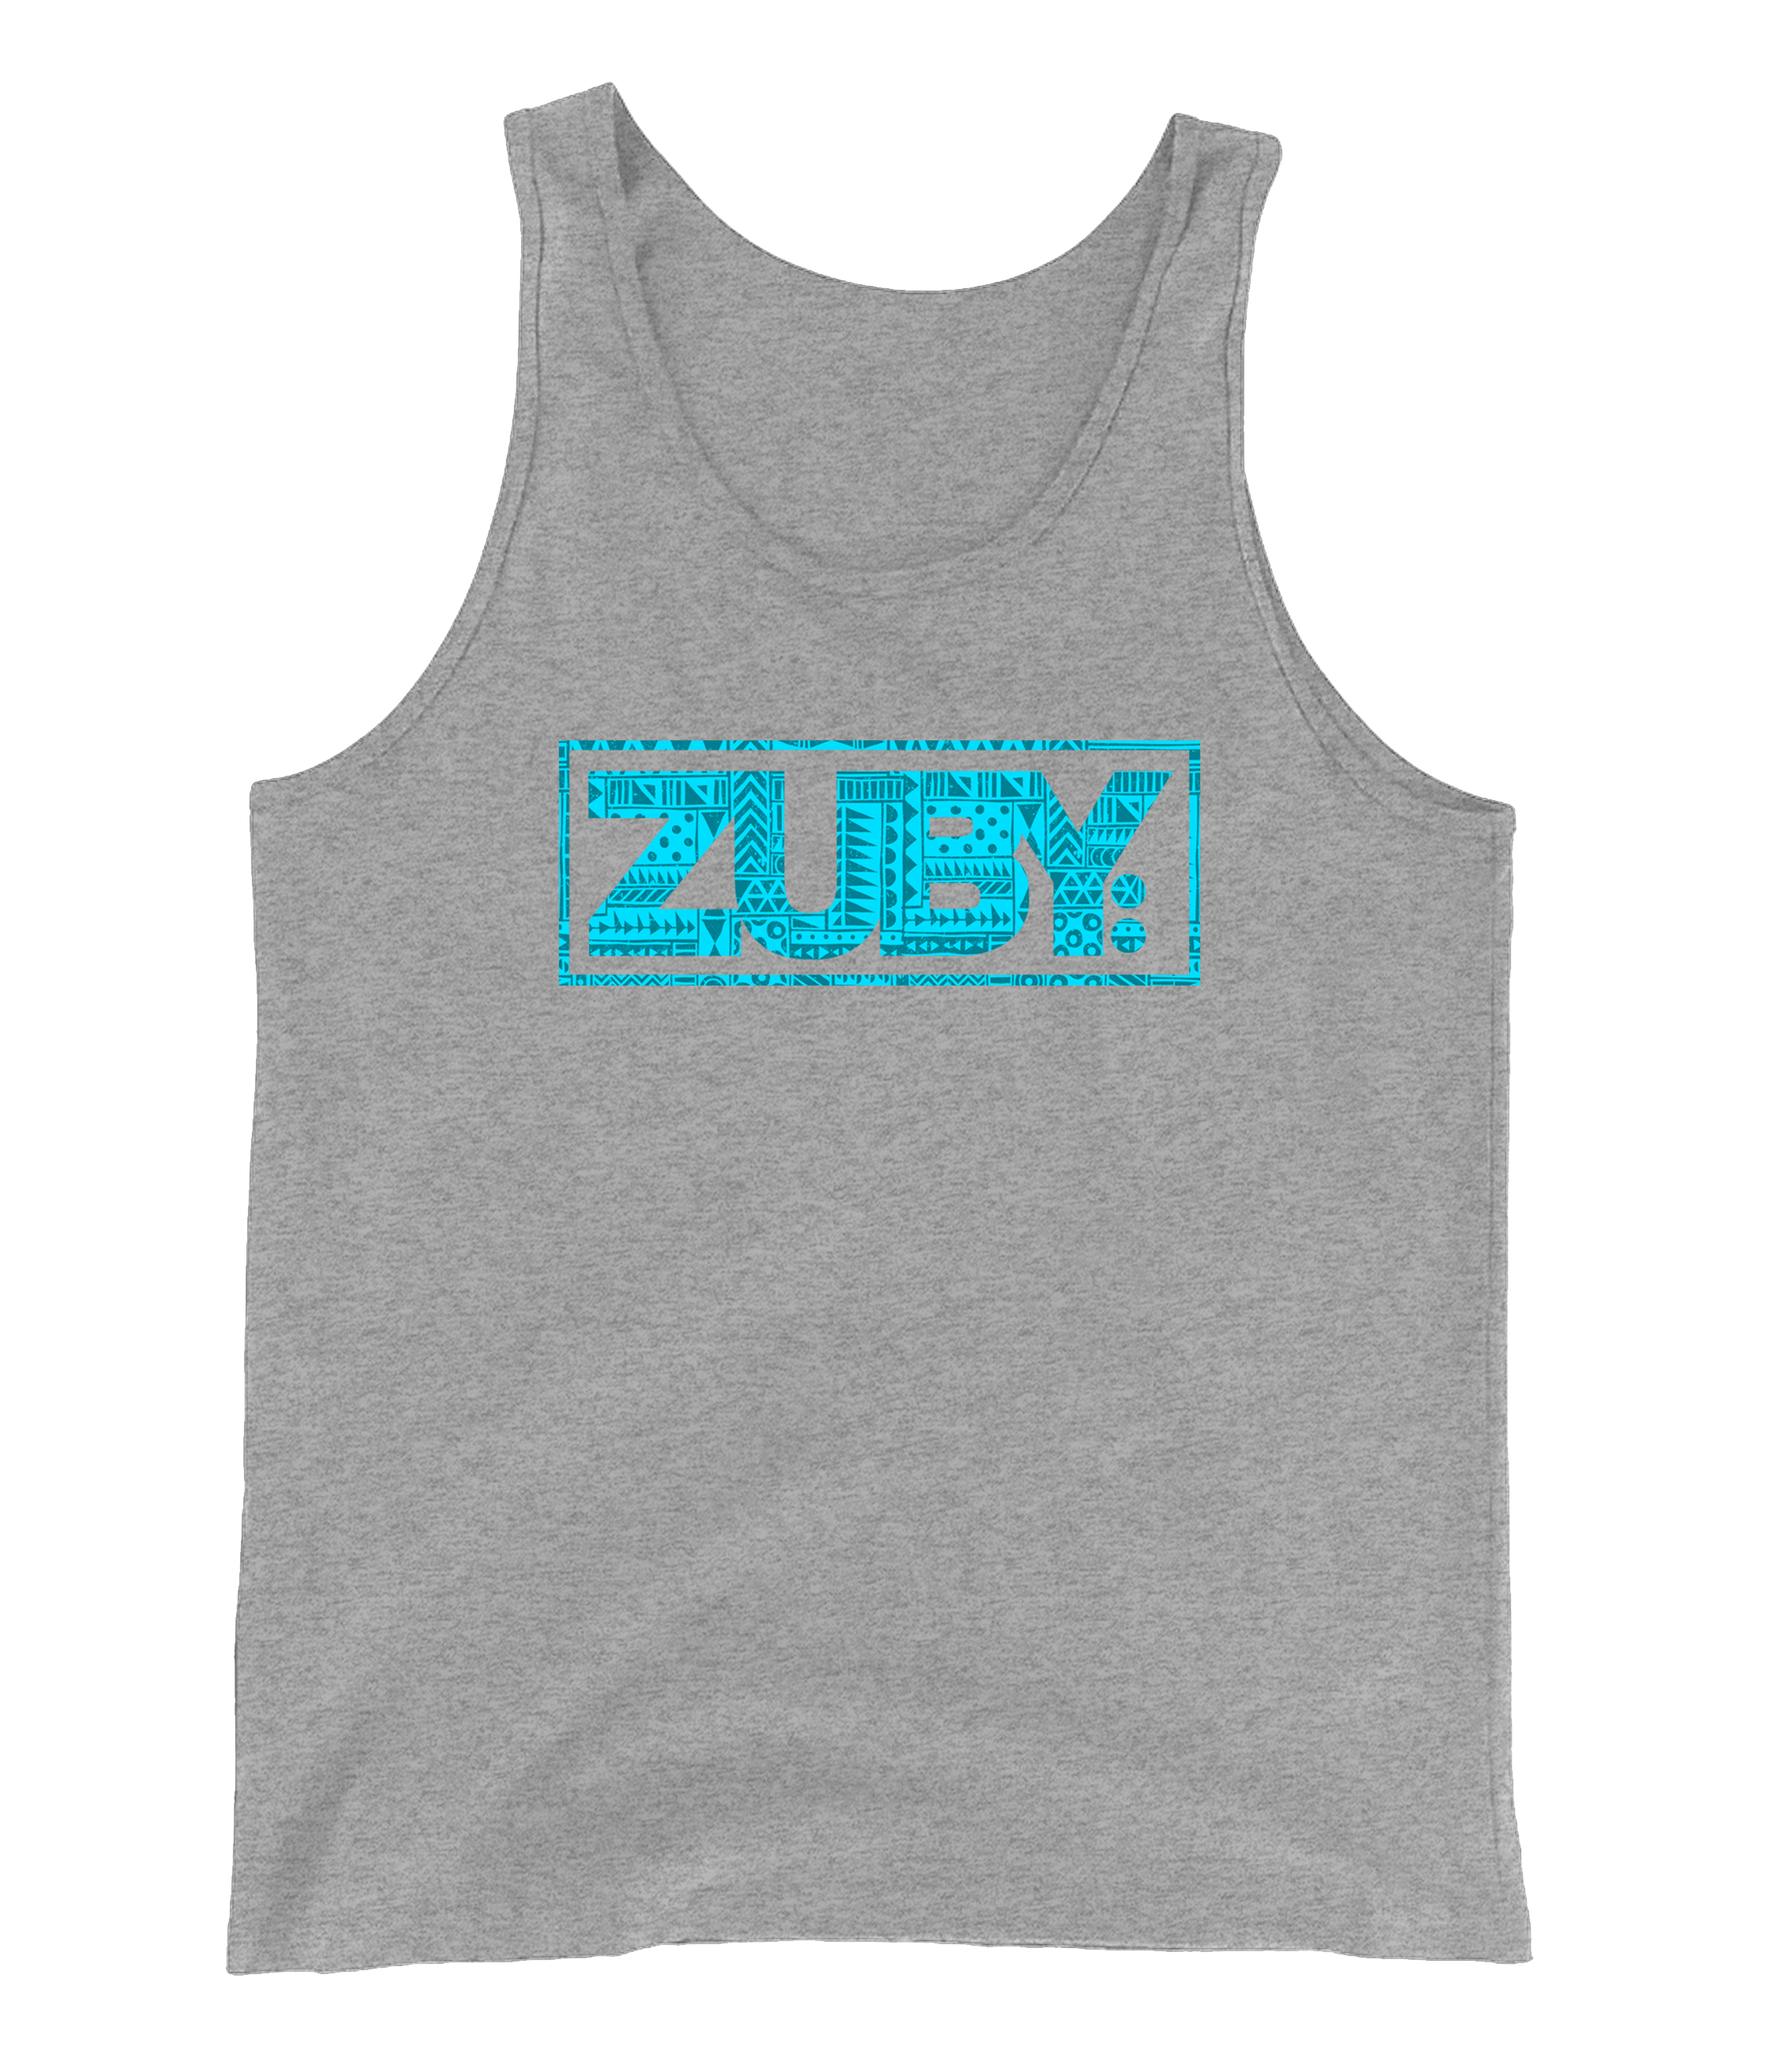 Zuby Classic Aztec Men's Tank Top